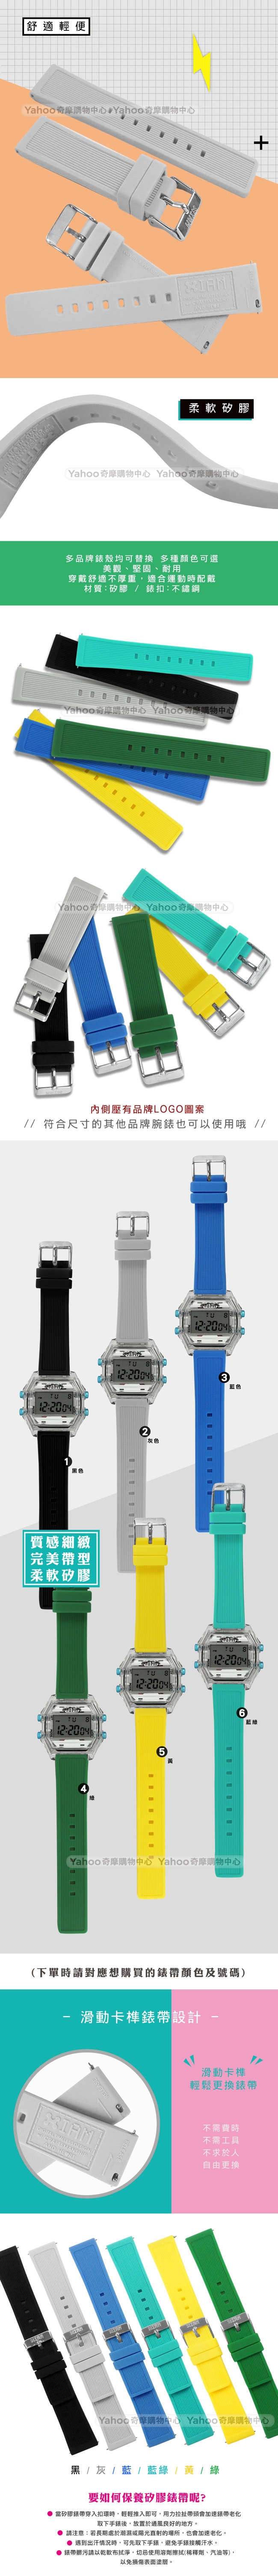 I AM / 20mm / 各種品牌通用 舒適耐用 輕便運動型 矽膠錶帶-多色